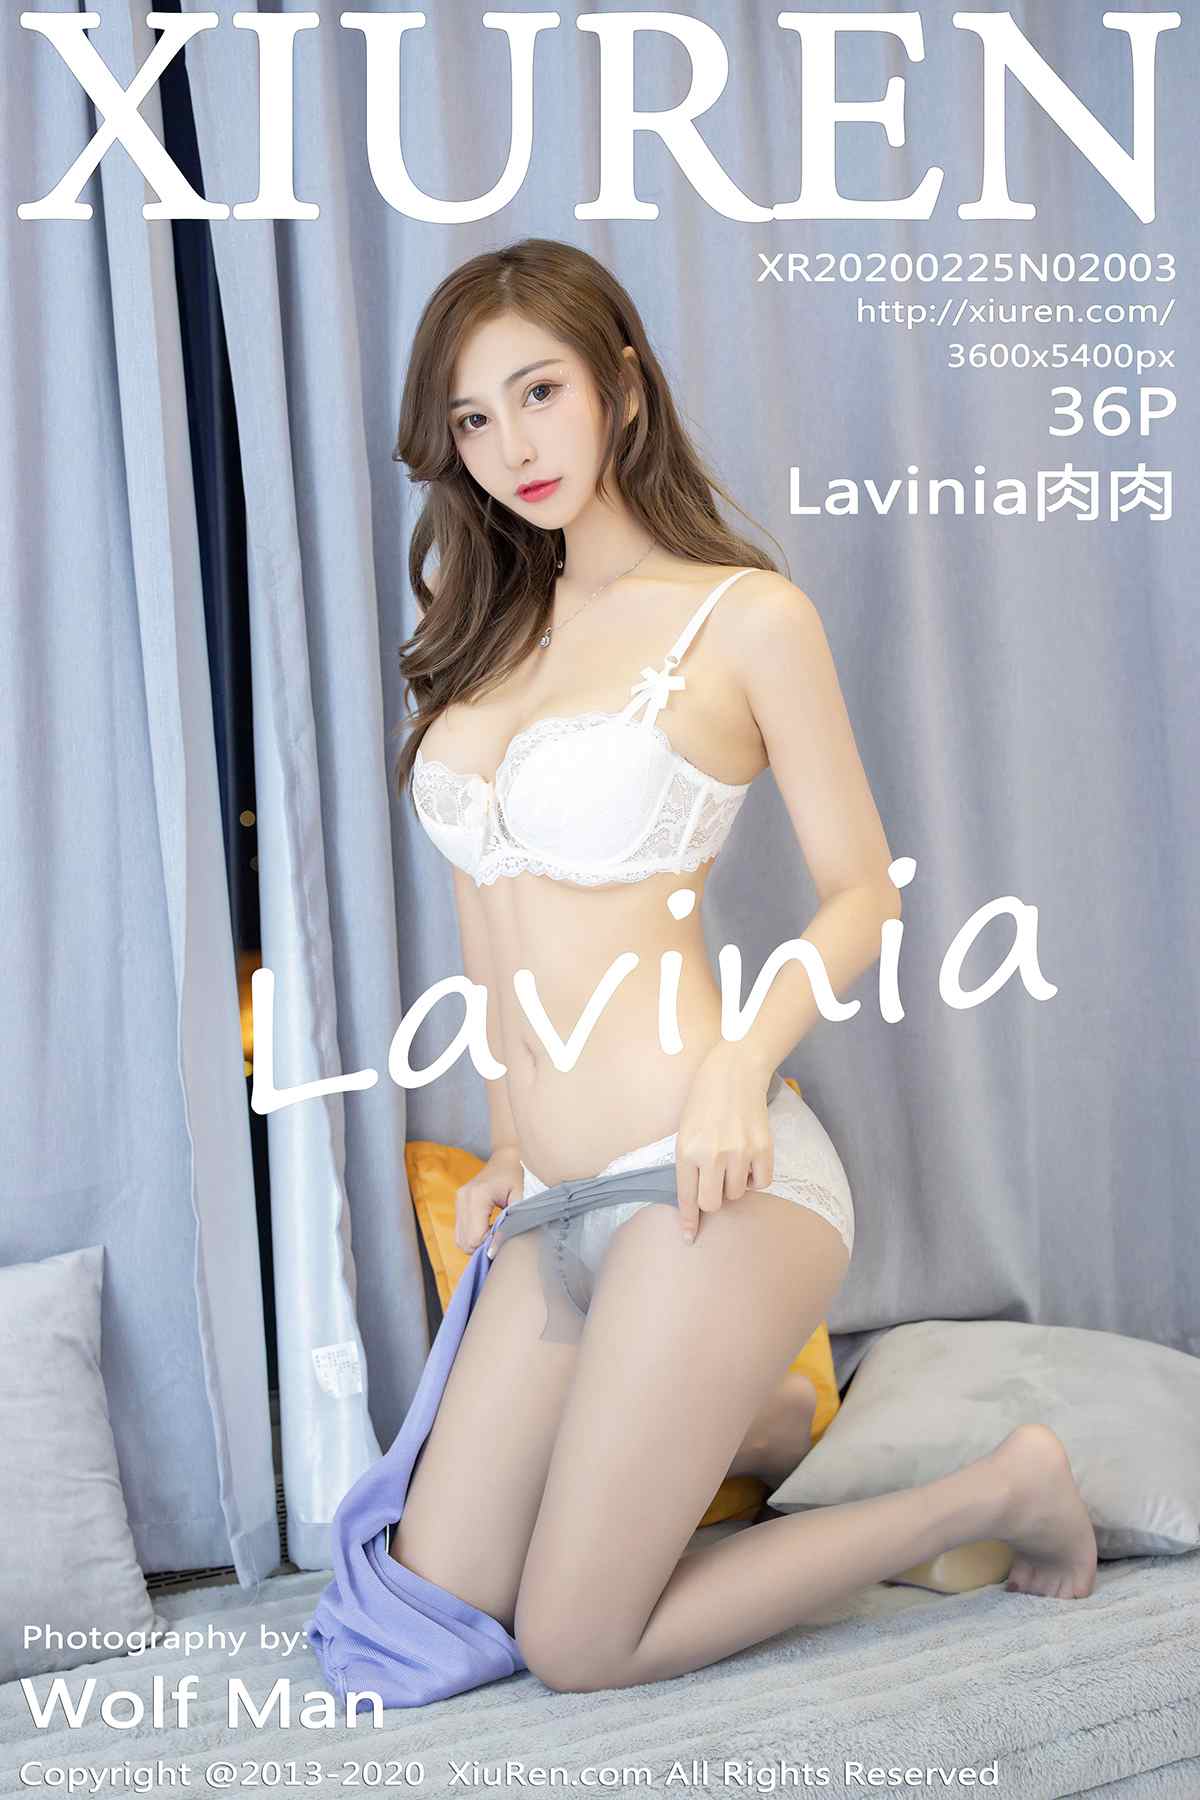 [XiuRen秀人网] 2020.02.25 No.2003 Lavinia肉肉 丝袜美腿[36P/75M]